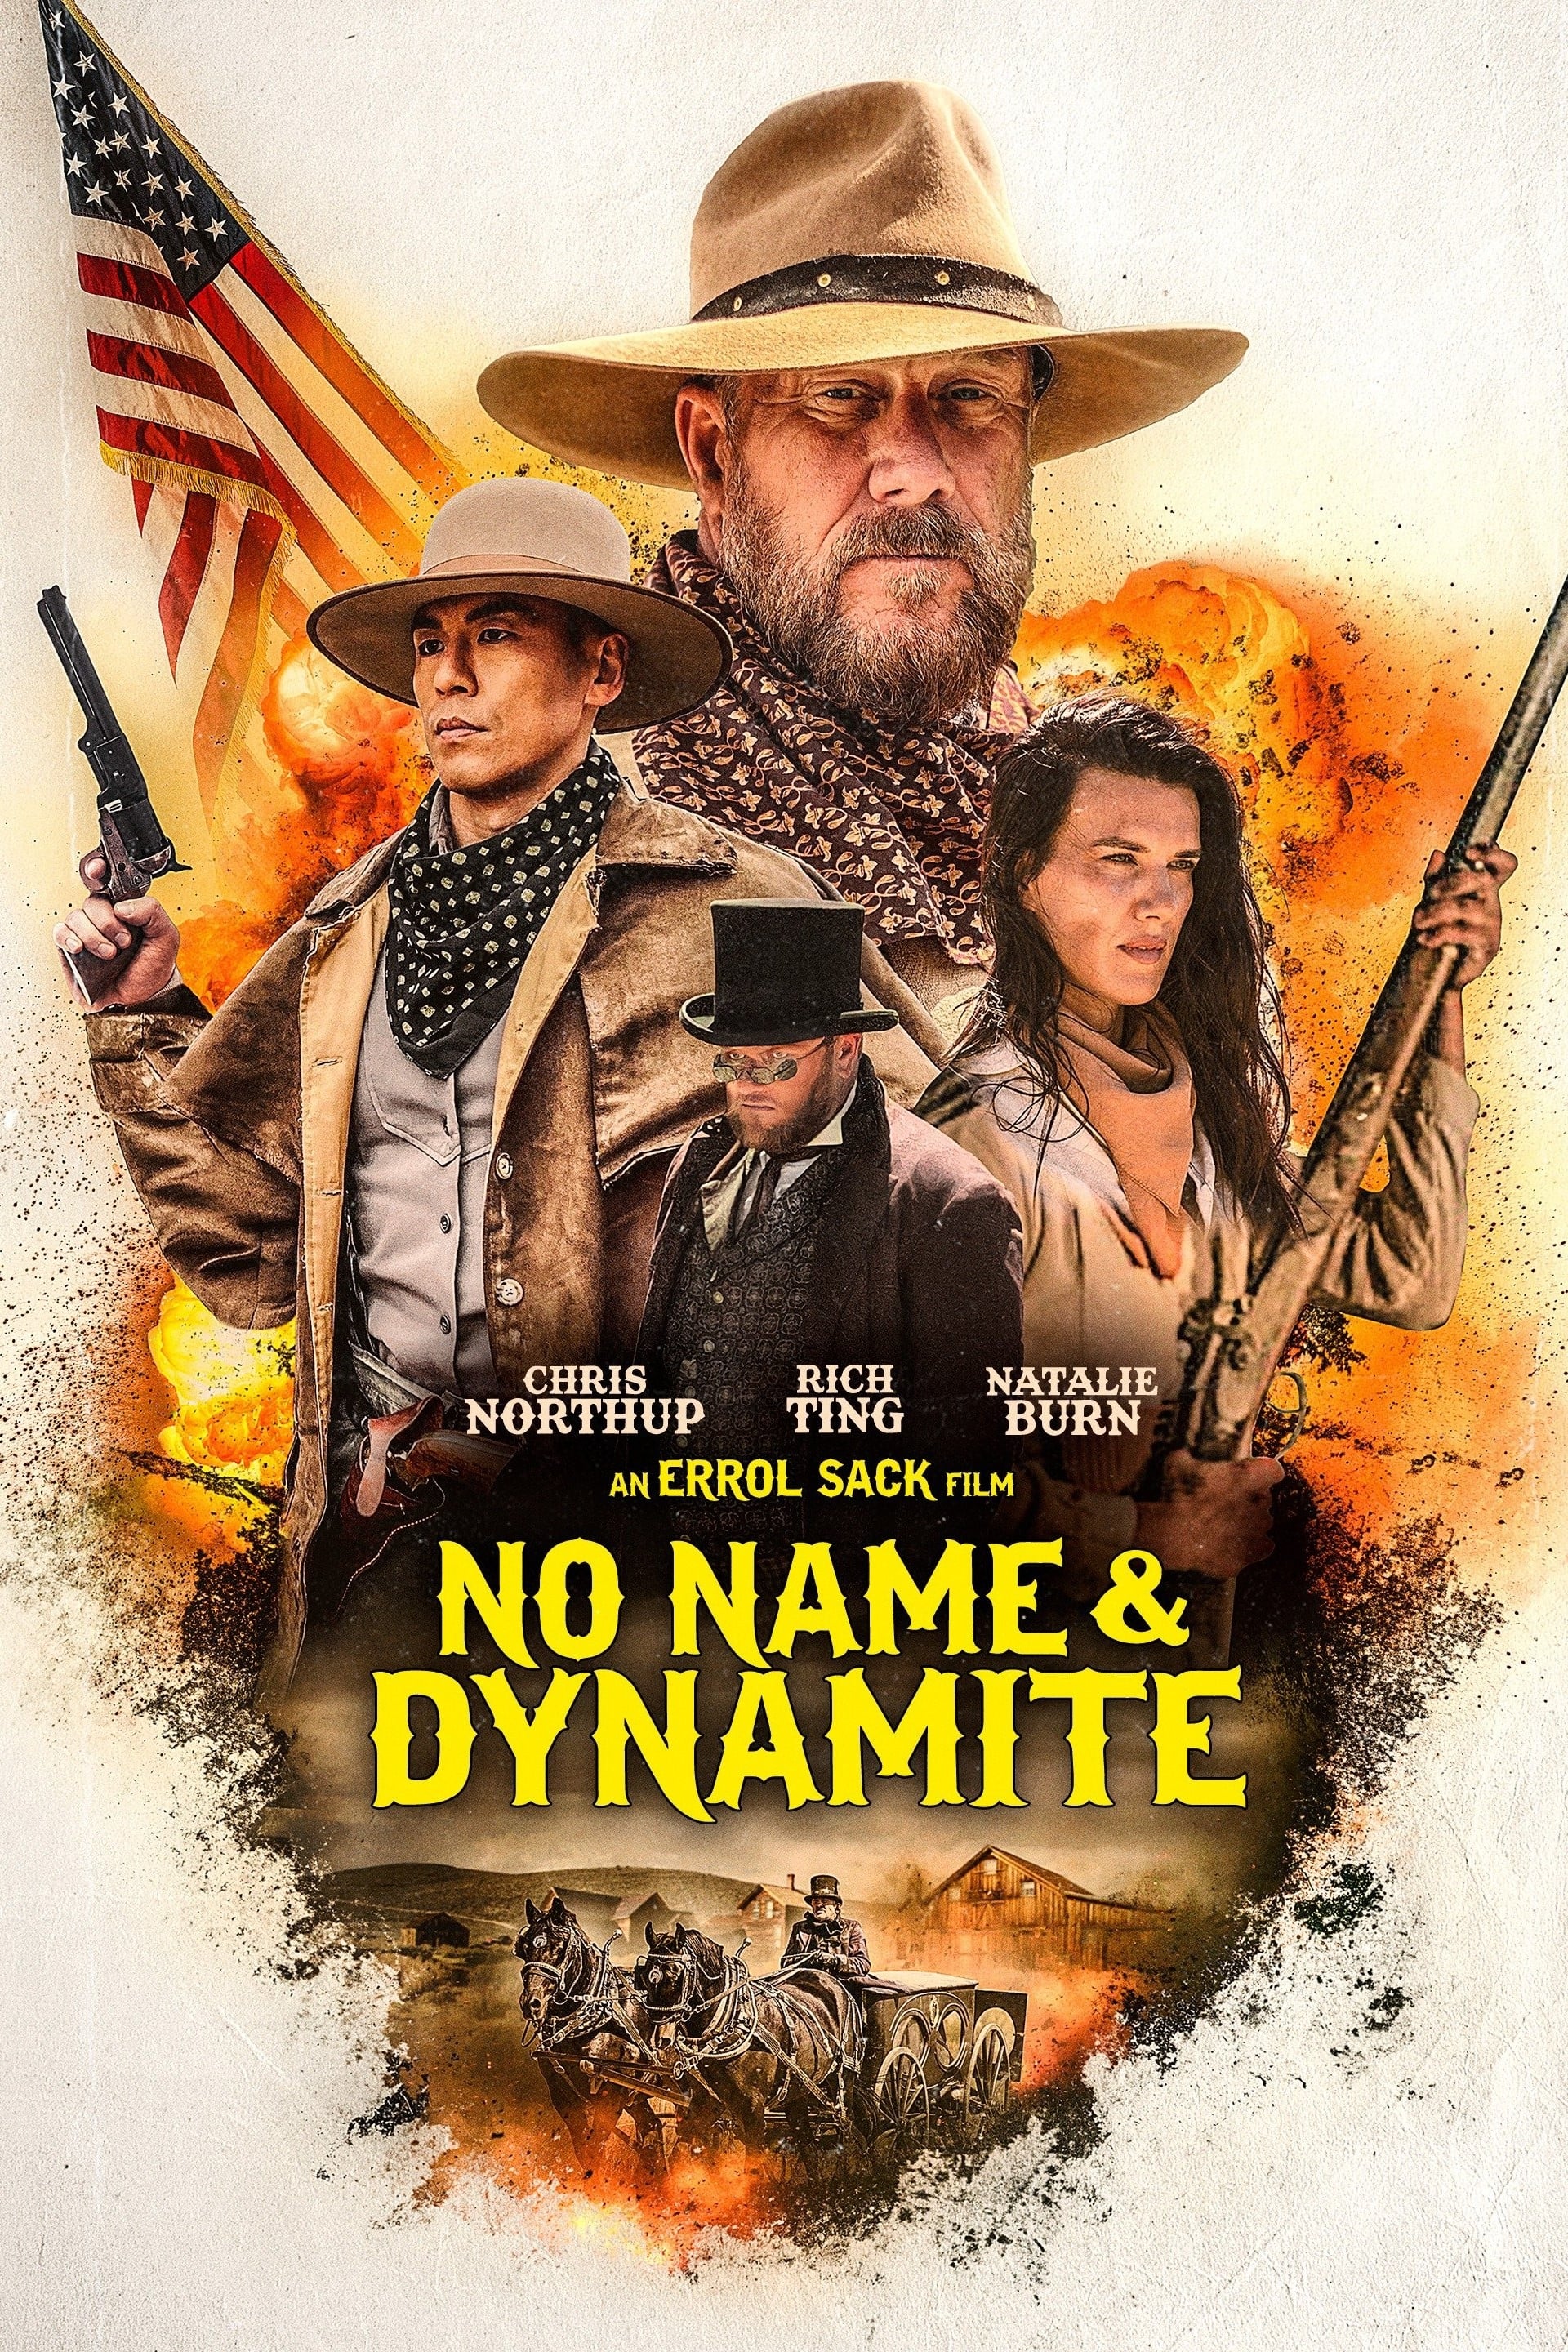 No Name & Dynamite